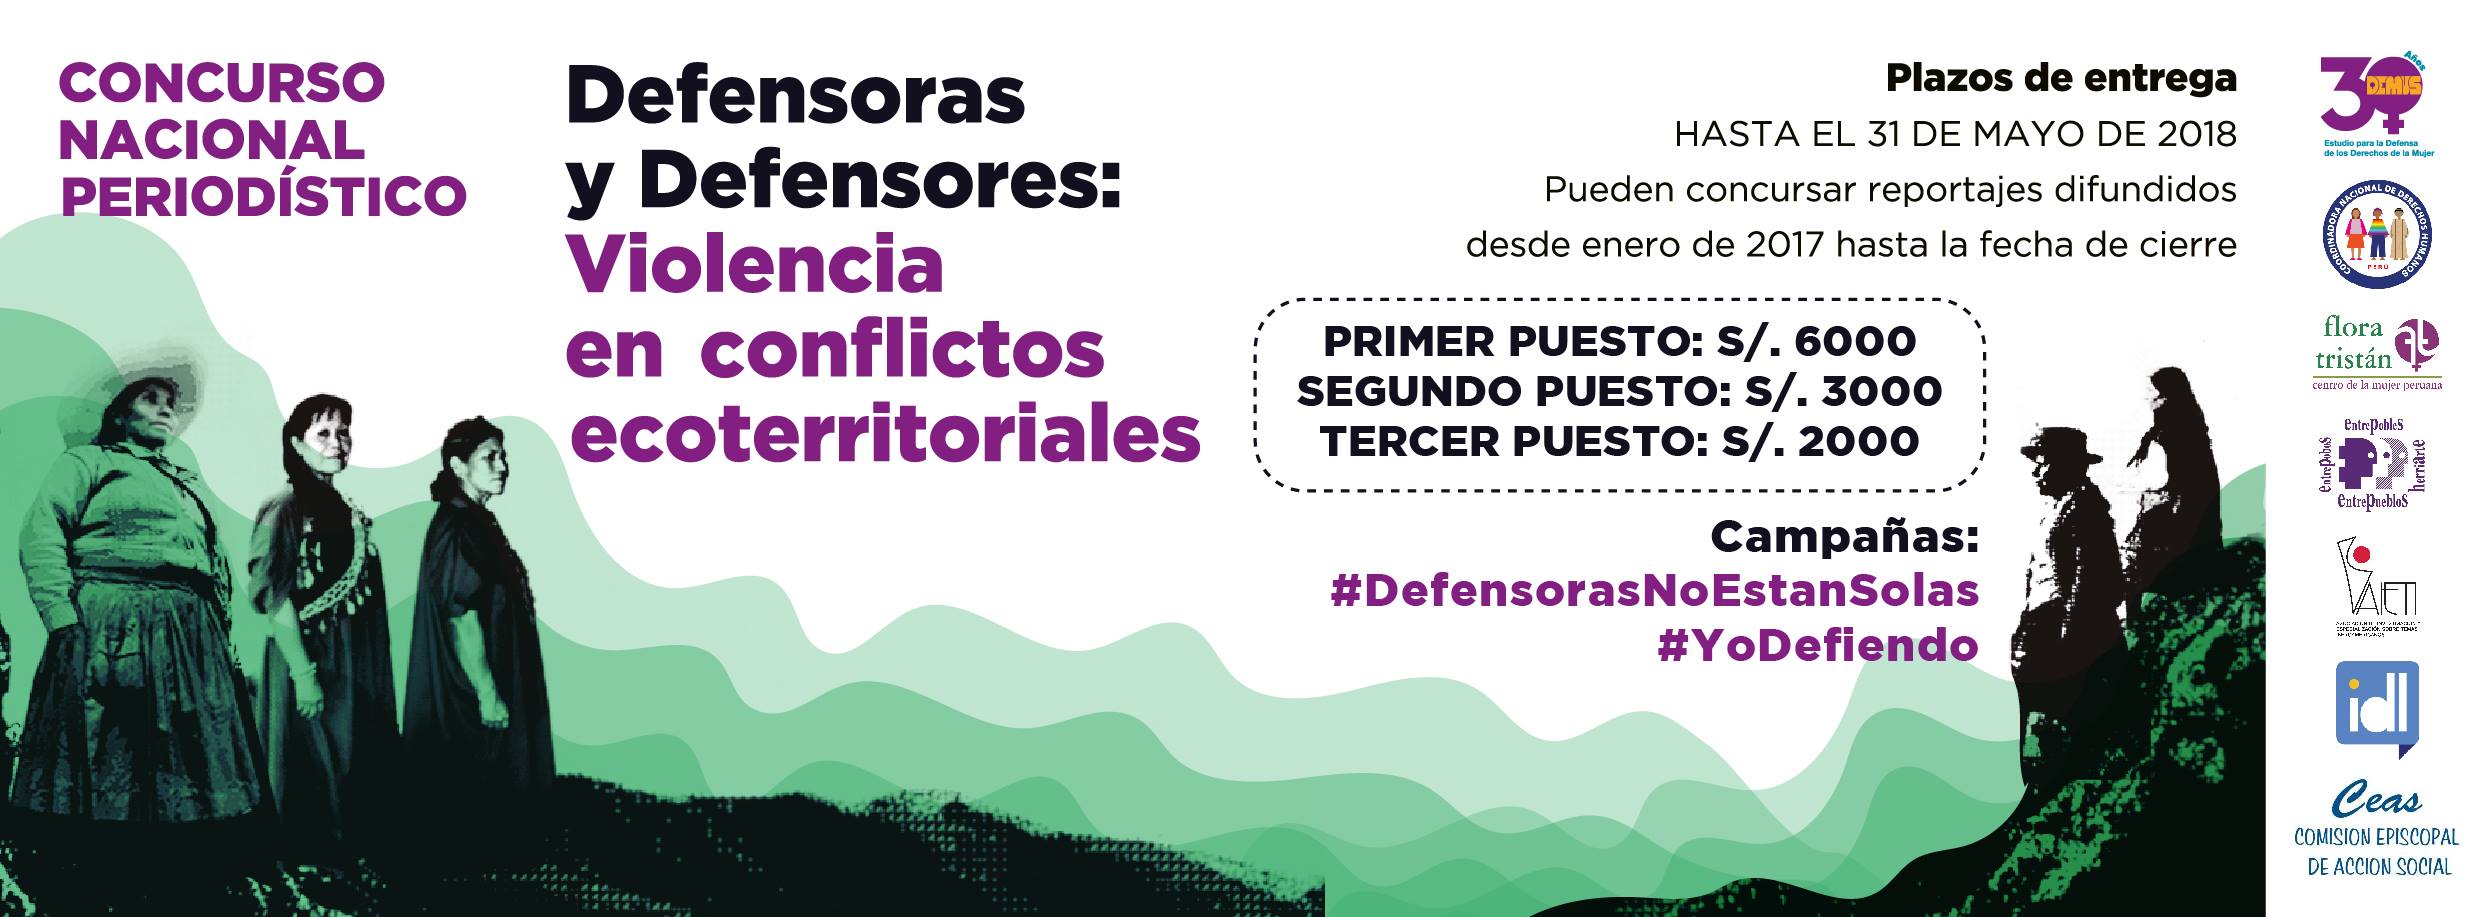 Concurso Nacional “Defensoras y Defensores: violencia en conflictos ecoterritoriales